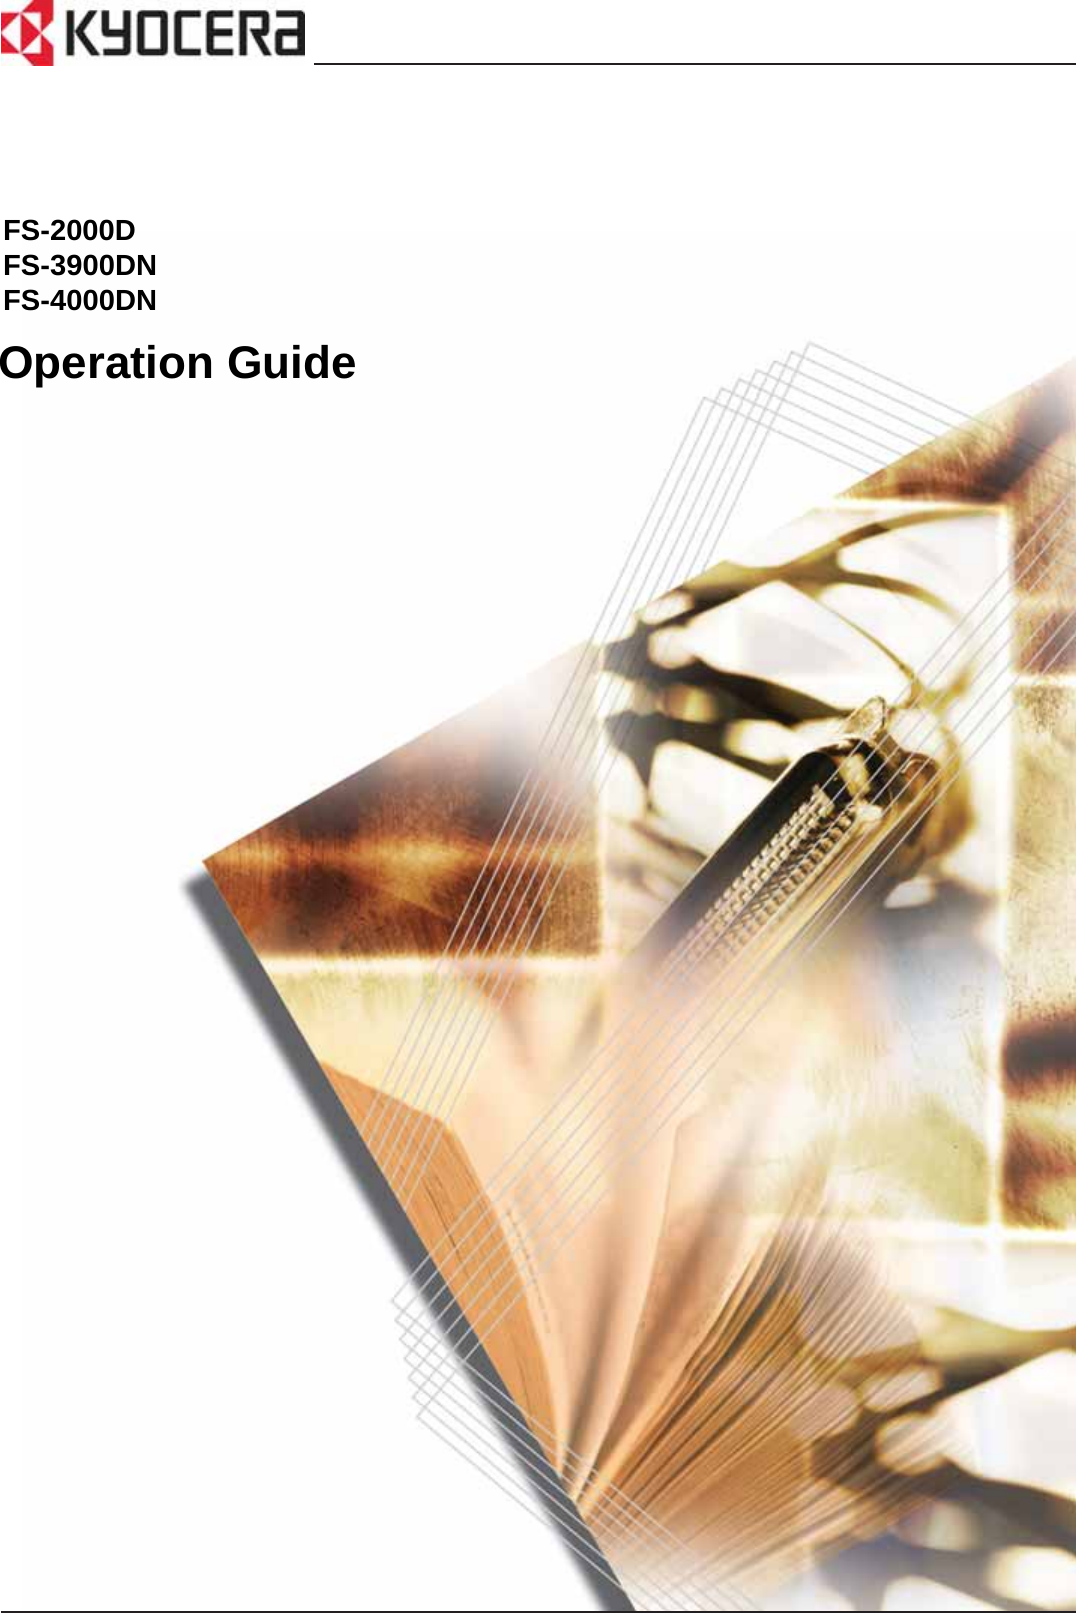 Operation GuideFS-2000DFS-3900DNFS-4000DN